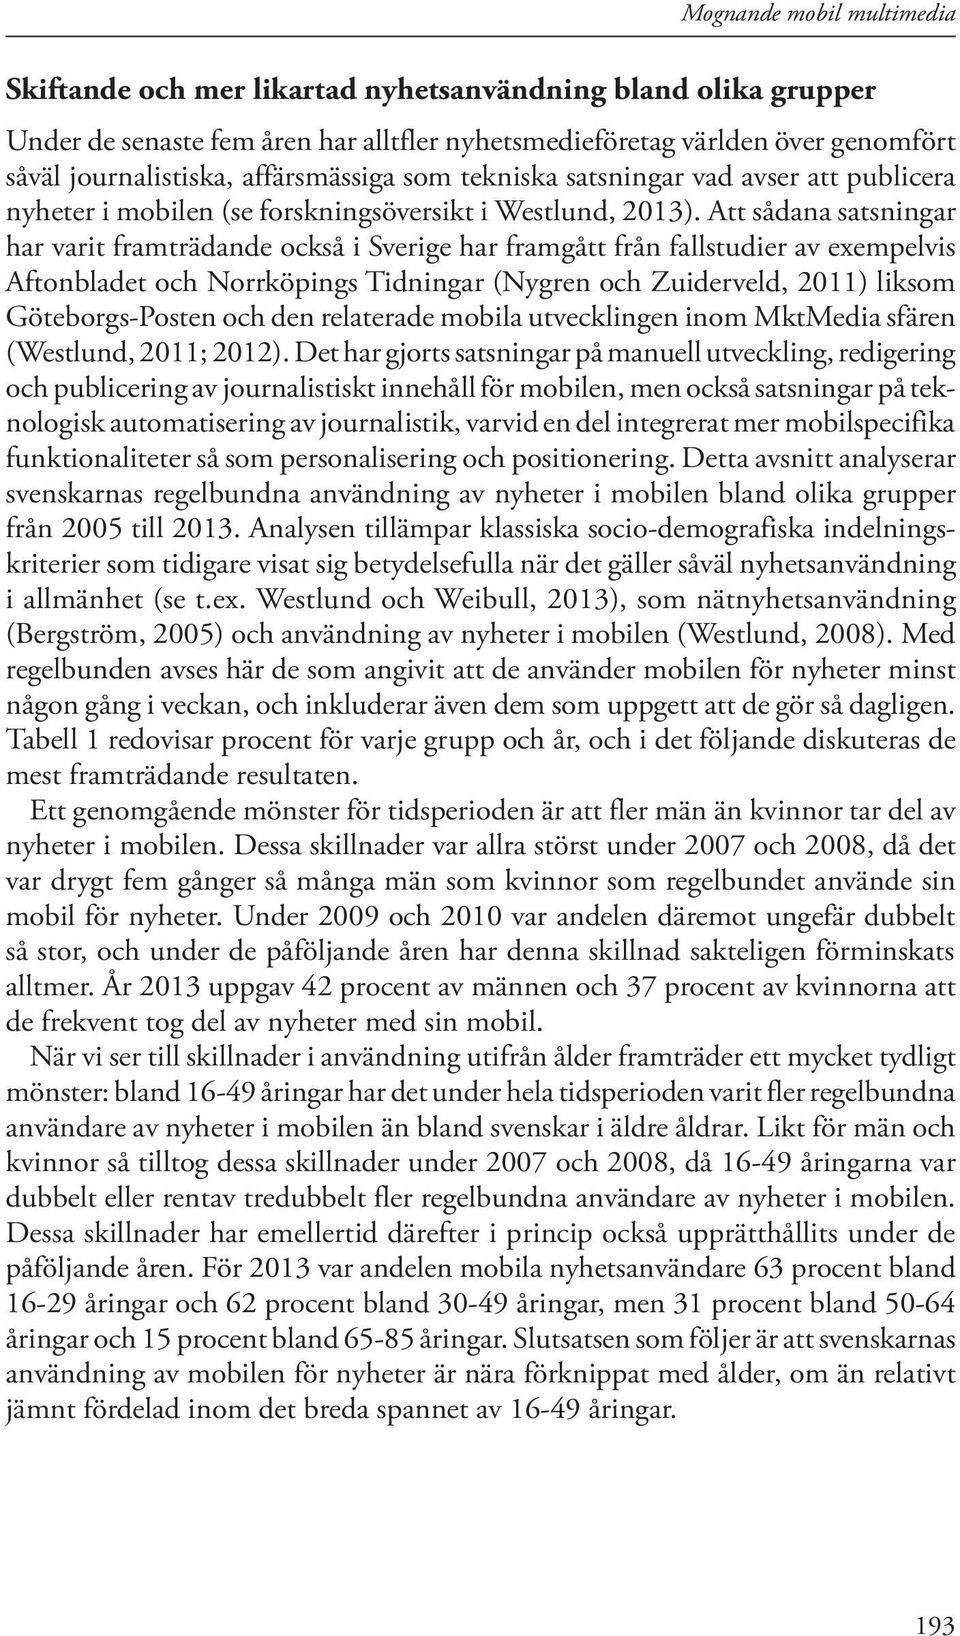 Att sådana satsningar har varit framträdande också i Sverige har framgått från fallstudier av exempelvis Aftonbladet och Norrköpings Tidningar (Nygren och Zuiderveld, 2011) liksom Göteborgs-Posten